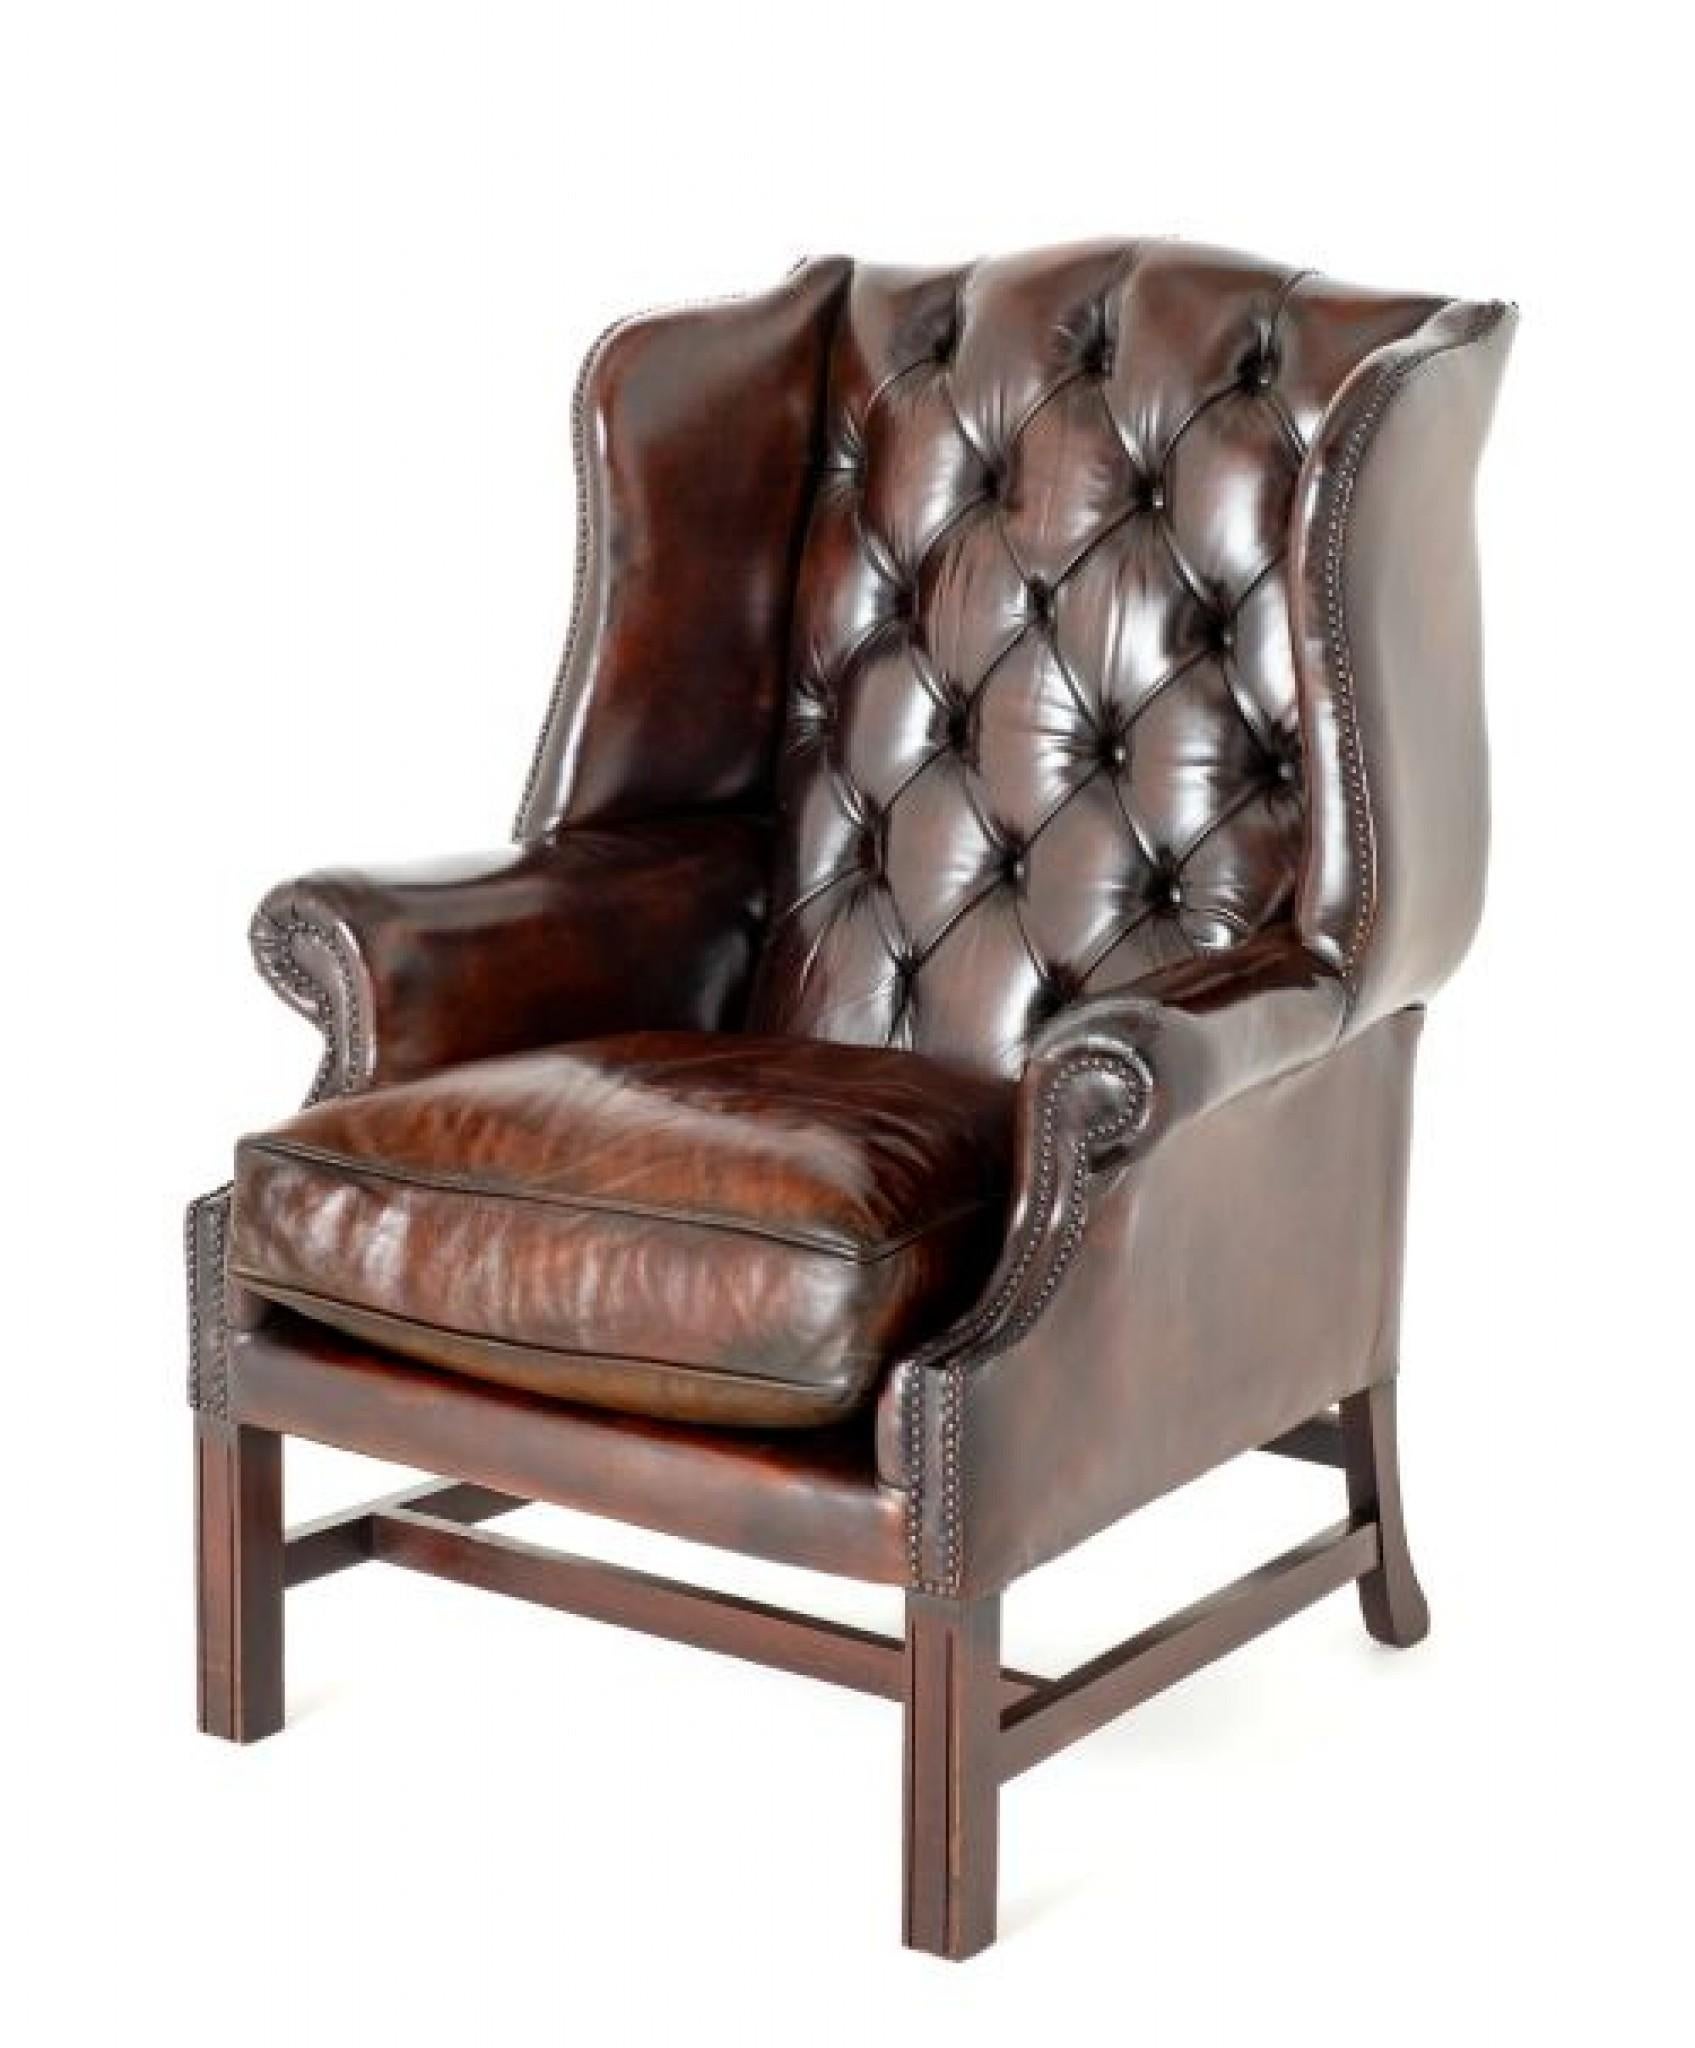 Fauteuil Wing en cuir de style néo-géorgien.
Le fauteuil à oreilles en cuir est un meuble classique qui se caractérise par un dossier haut et des 